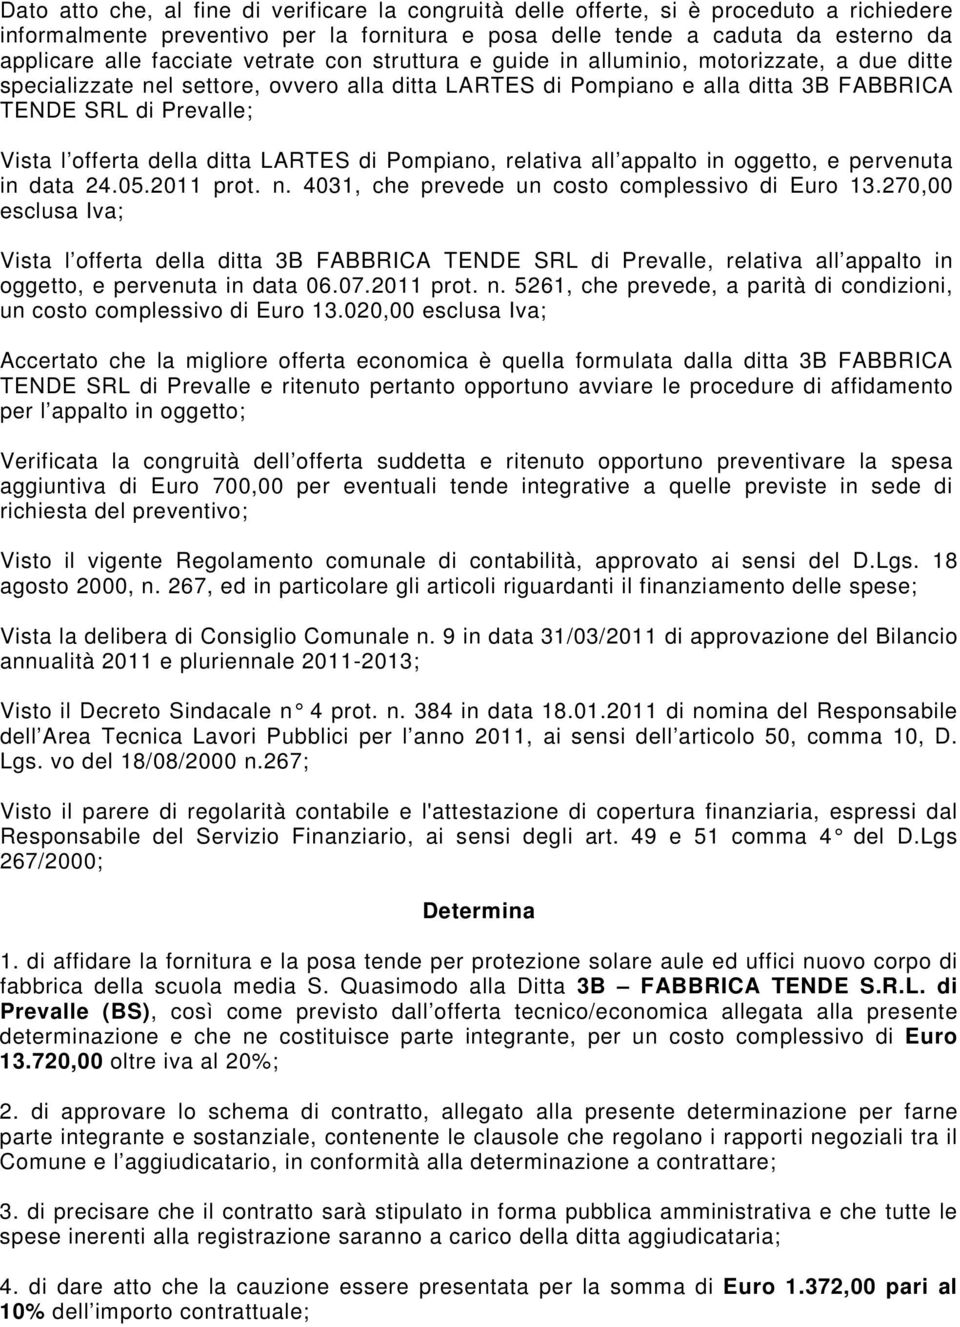 offerta della ditta LARTES di Pompiano, relativa all appalto in oggetto, e pervenuta in data 24.05.2011 prot. n. 4031, che prevede un costo complessivo di Euro 13.